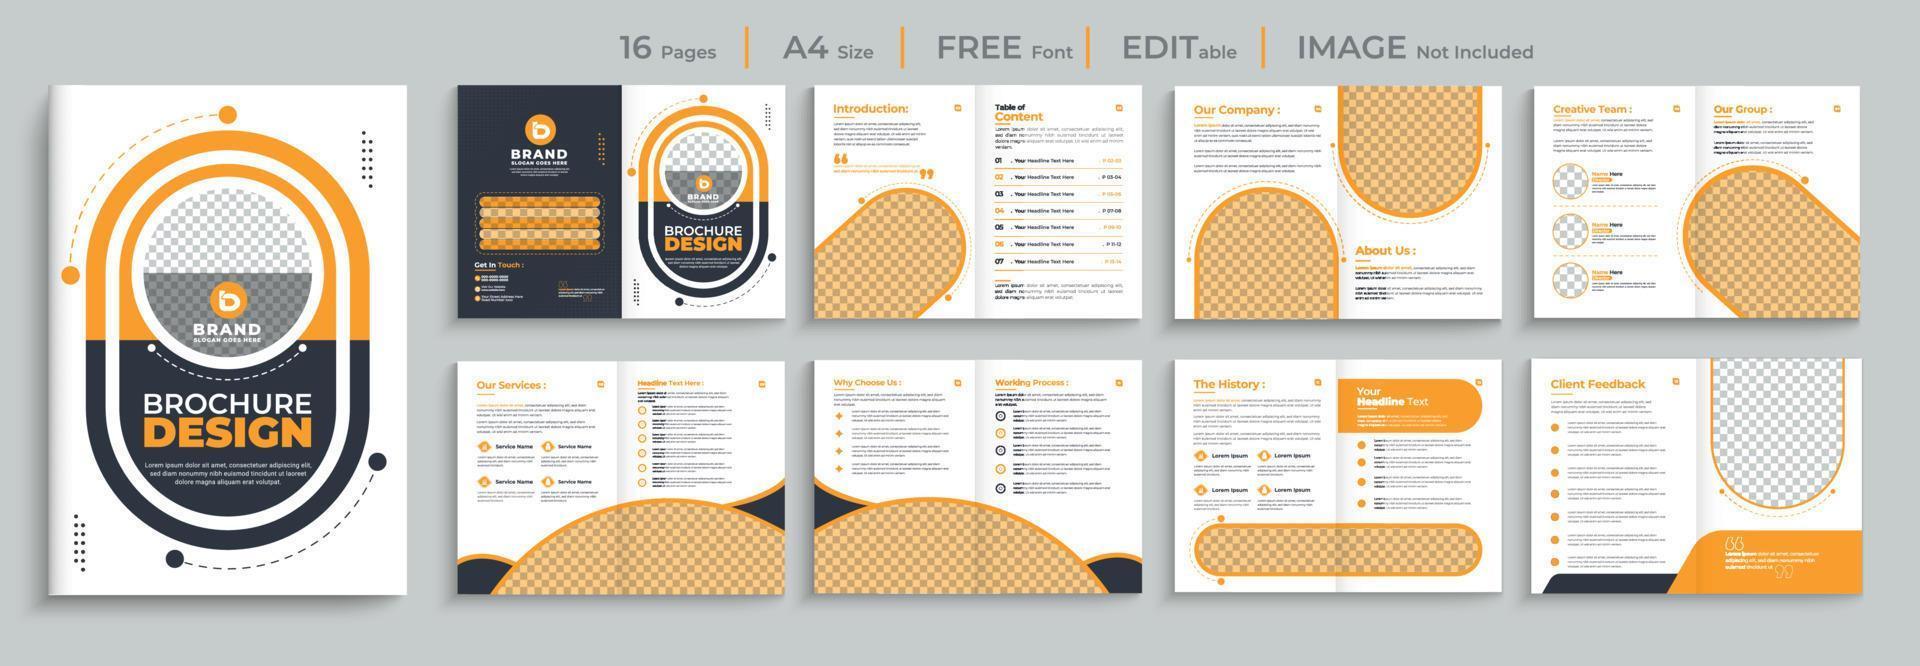 cor sólida amarela moderna corporativa moderna 16 páginas multipáginas tamanho a4 panfleto de perfil de empresa modelo de vetor de conjunto de design de brochura de negócios